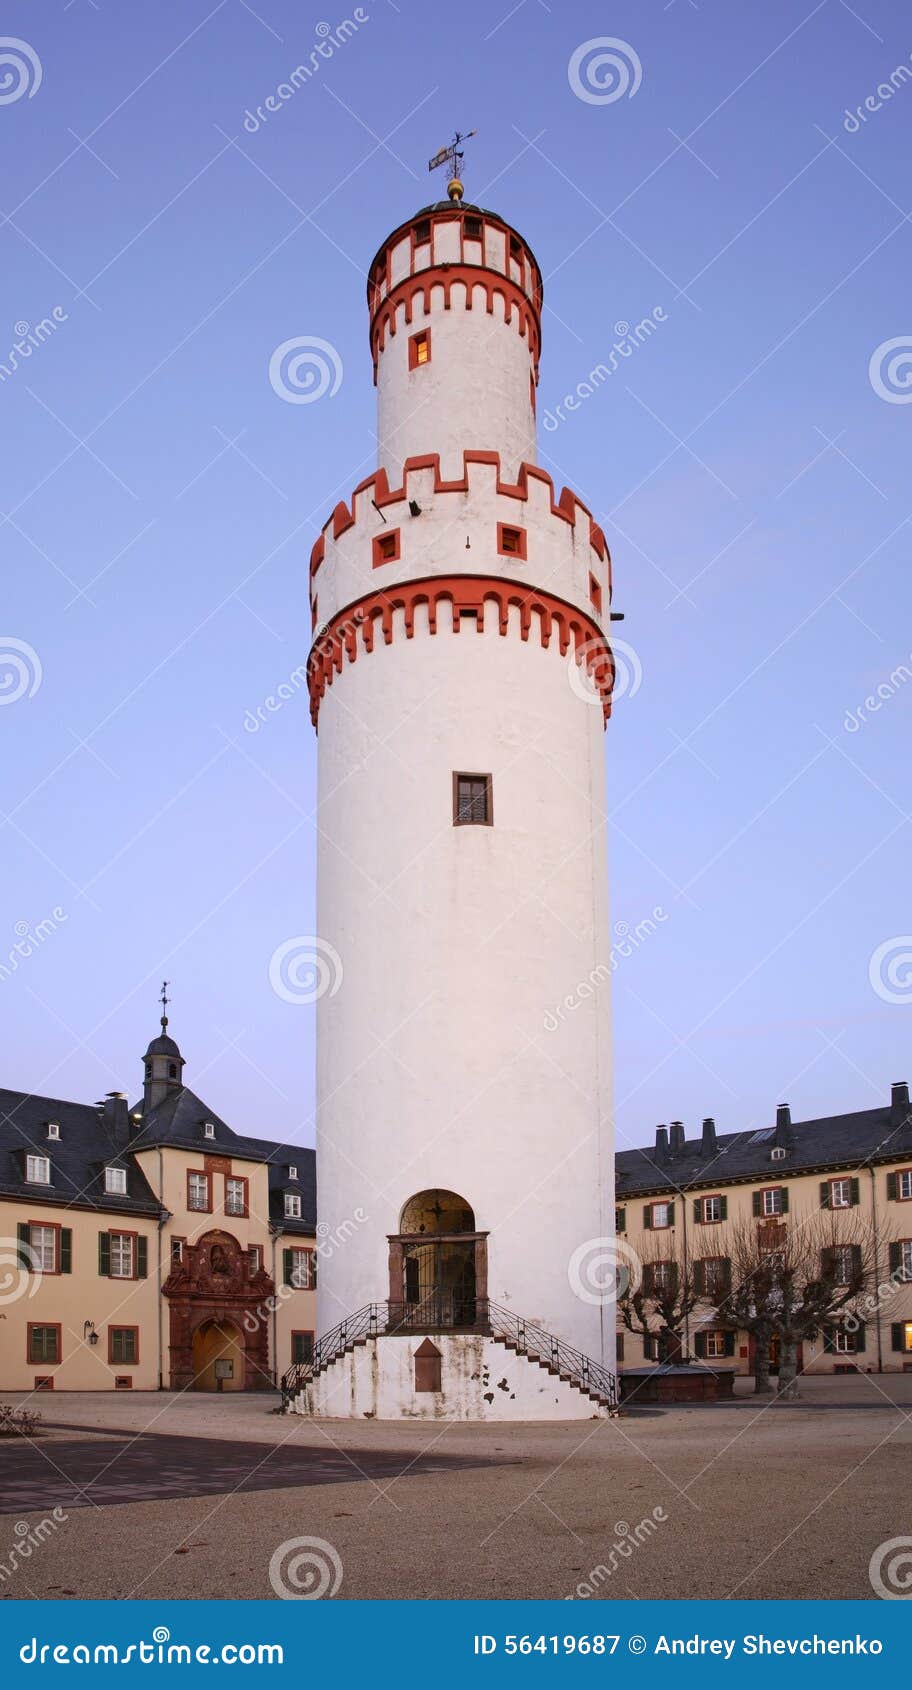 verkopen afgewerkt beschermen Witte Toren (Schlossturm) in Slechte Homburg Duitsland Stock Afbeelding -  Image of homburg, slecht: 56419687